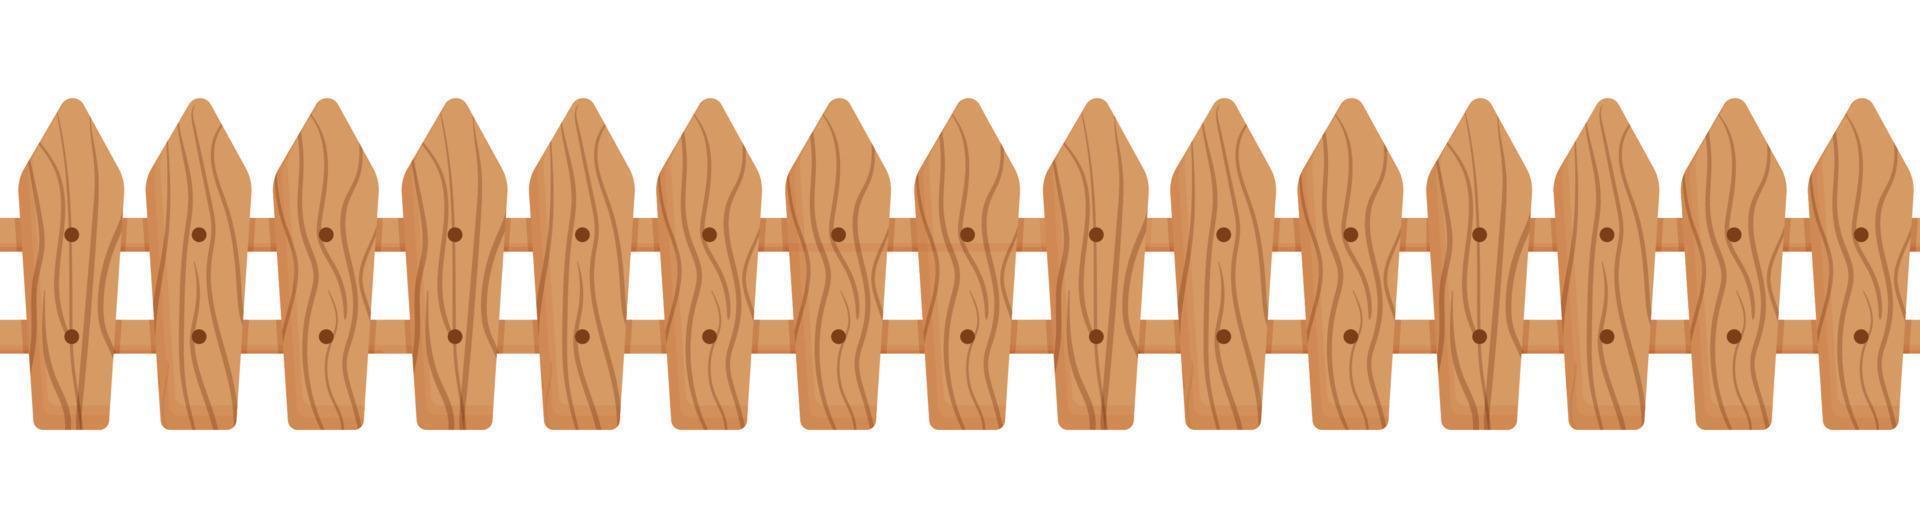 fronteira sem costura de cerca bonito de madeira. ilustração em vetor plana dos desenhos animados isolada no fundo branco